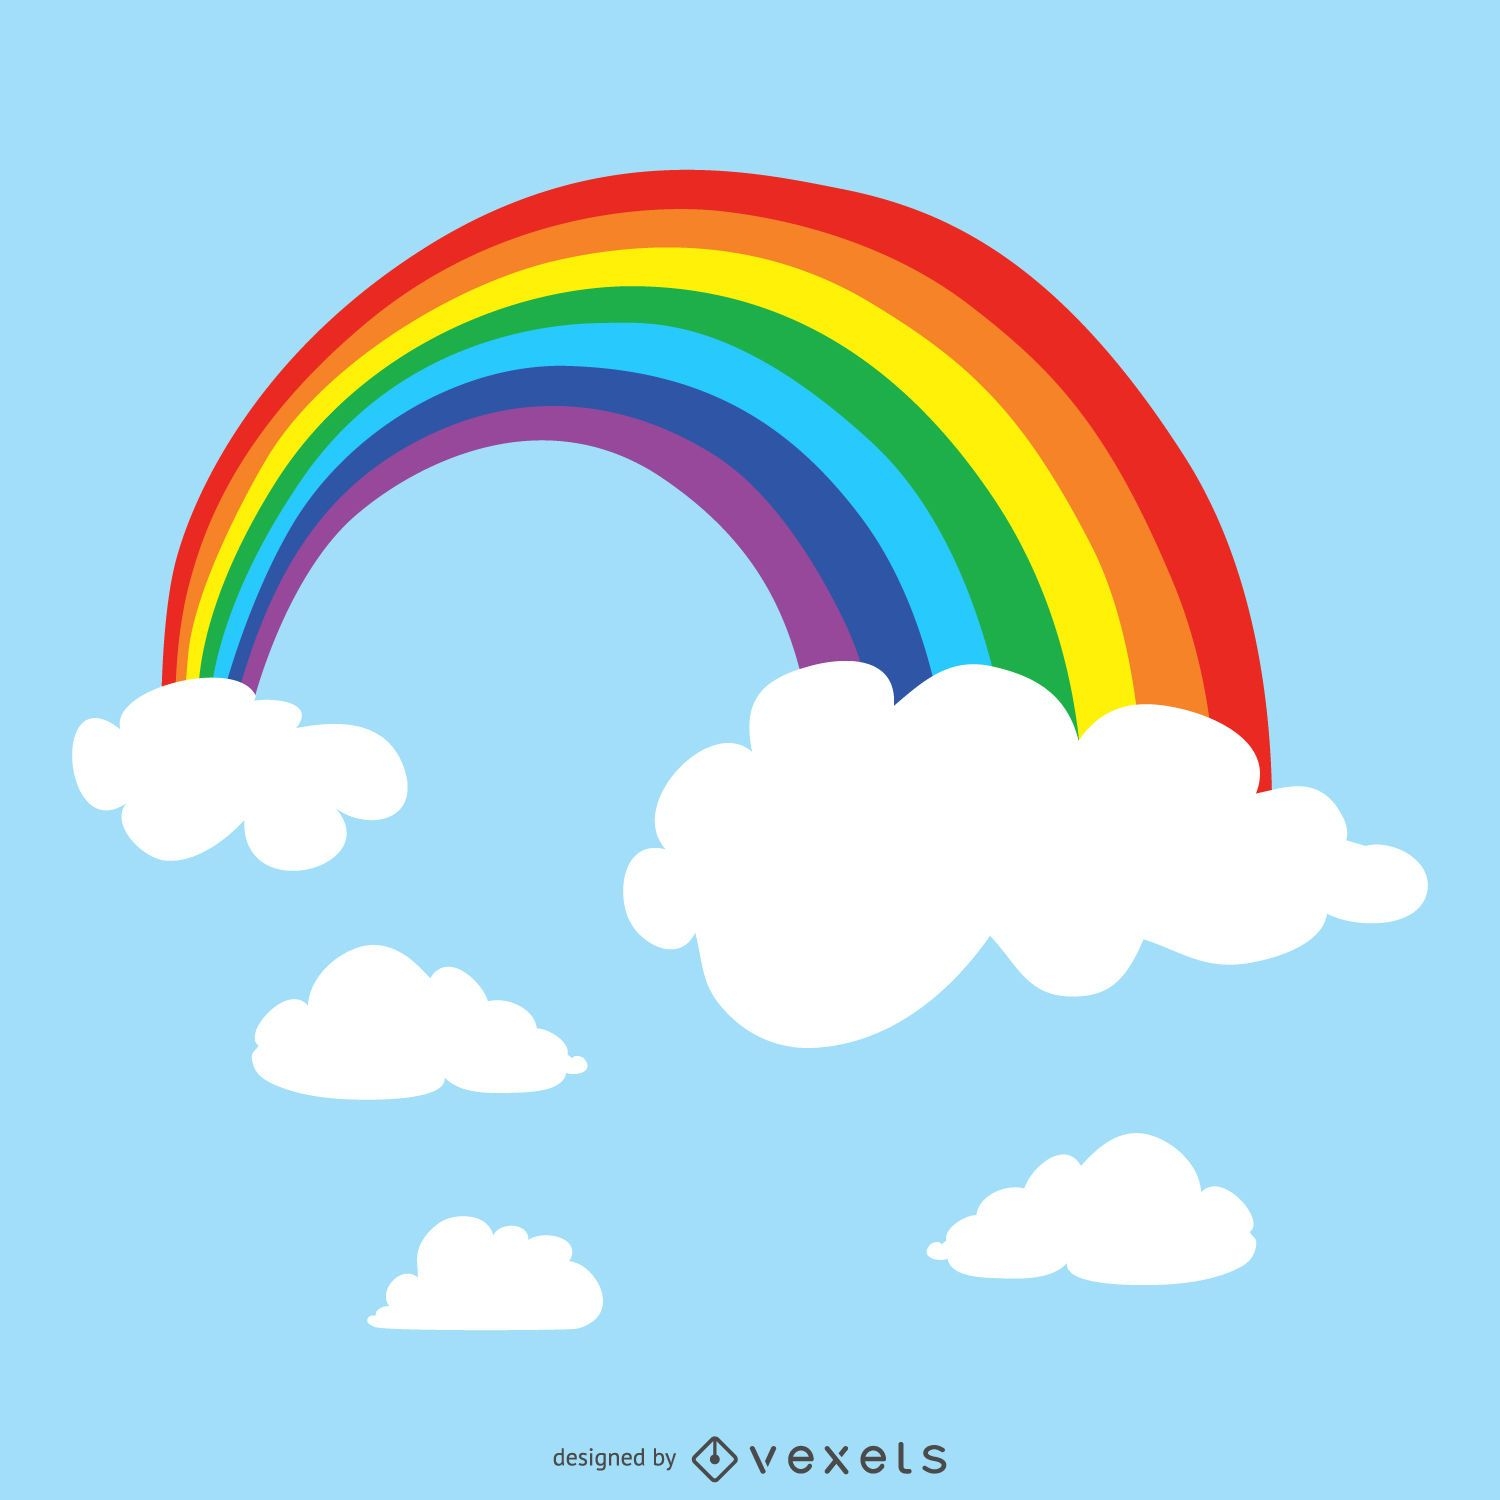 Rainbow in sky illustration